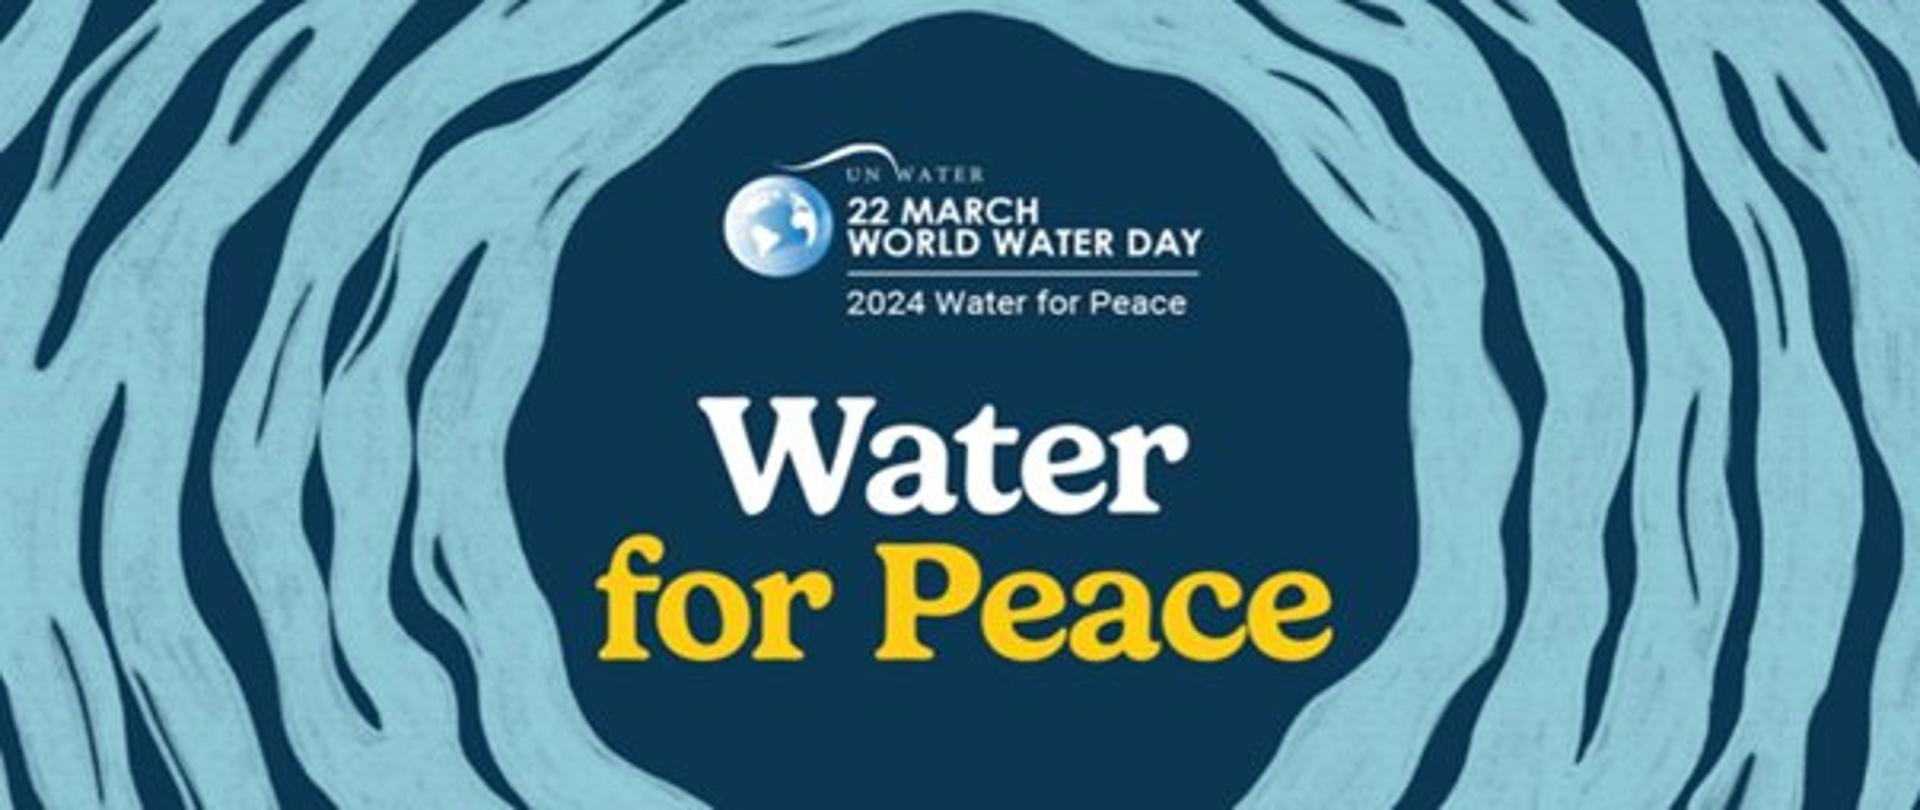 Na ciemnym niebieskim tle umieszczono ułożony symbol fal w jaśniejszym odcieniu. Na środku grafiki umieszczono symbol kuli ziemskiej z napisem z prawej strony "ON WATER - WORLD WATER DAY, 2024 Water for Peace". Poniżej napis "Water for Peace".